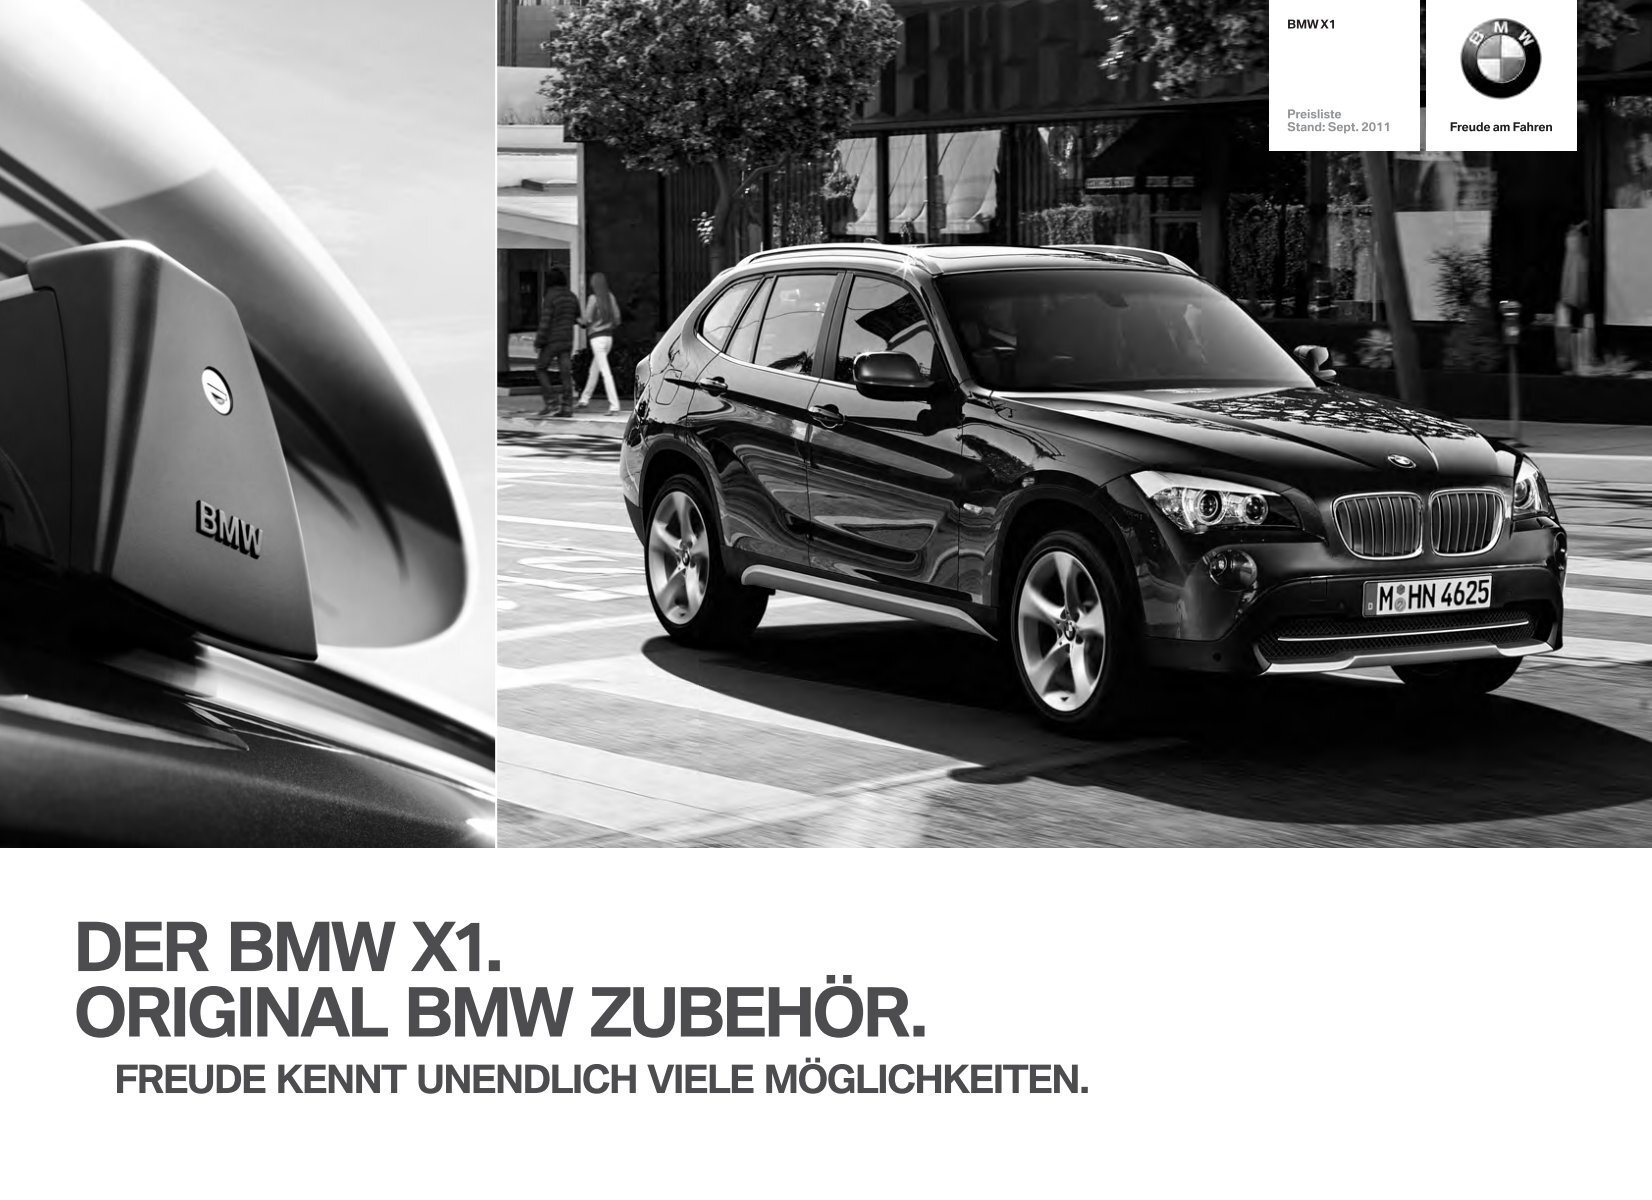 Außen-Design - M Performance - Original BMW Zubehör.